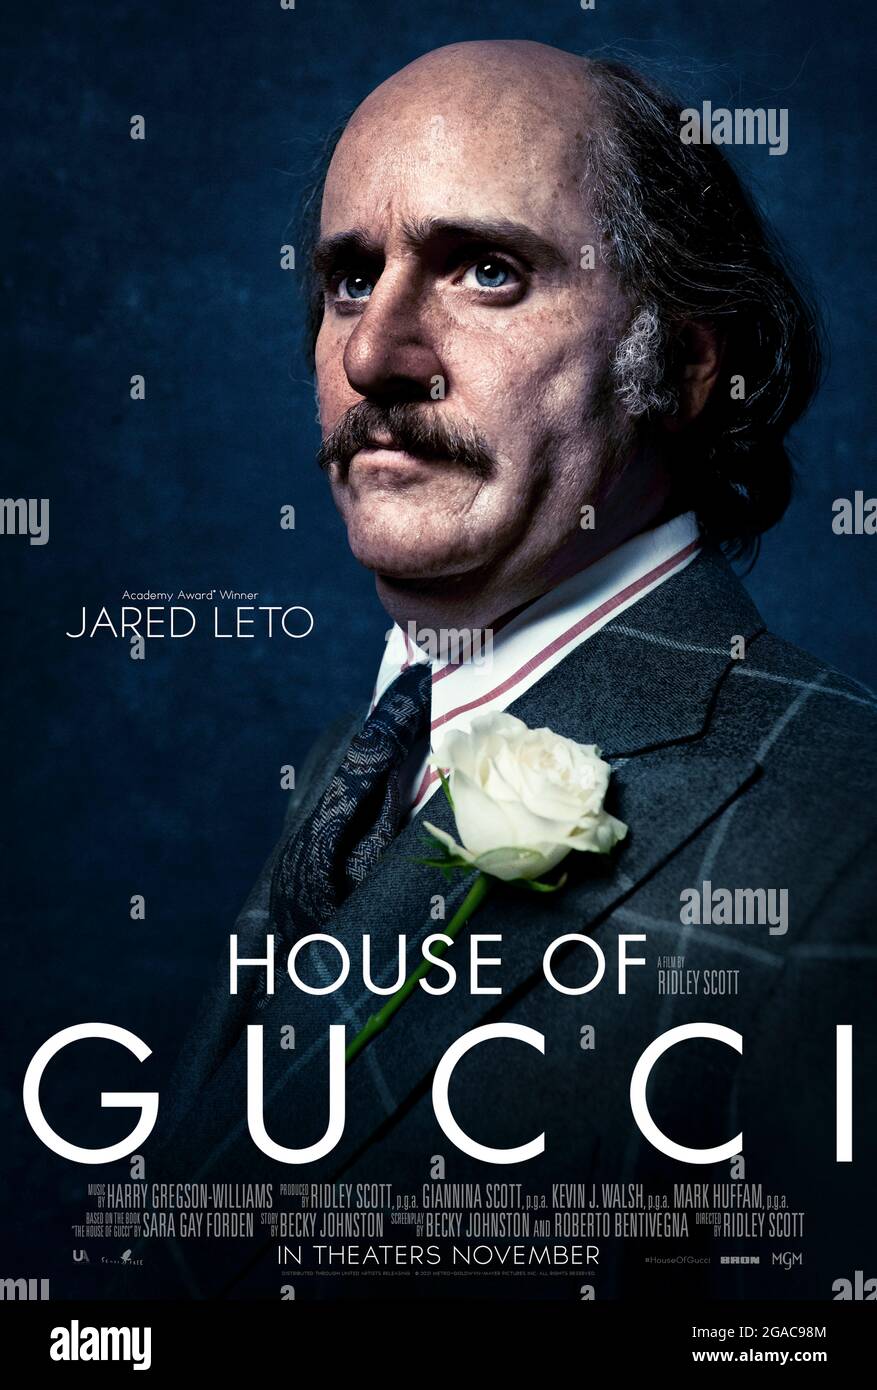 House of Gucci (2021) diretto da Ridley Scott e interpretato da Jared Leto come Paolo Gucci in un dramma criminale ispirato all'impero di famiglia dietro la famosa casa di moda italiana. Foto Stock